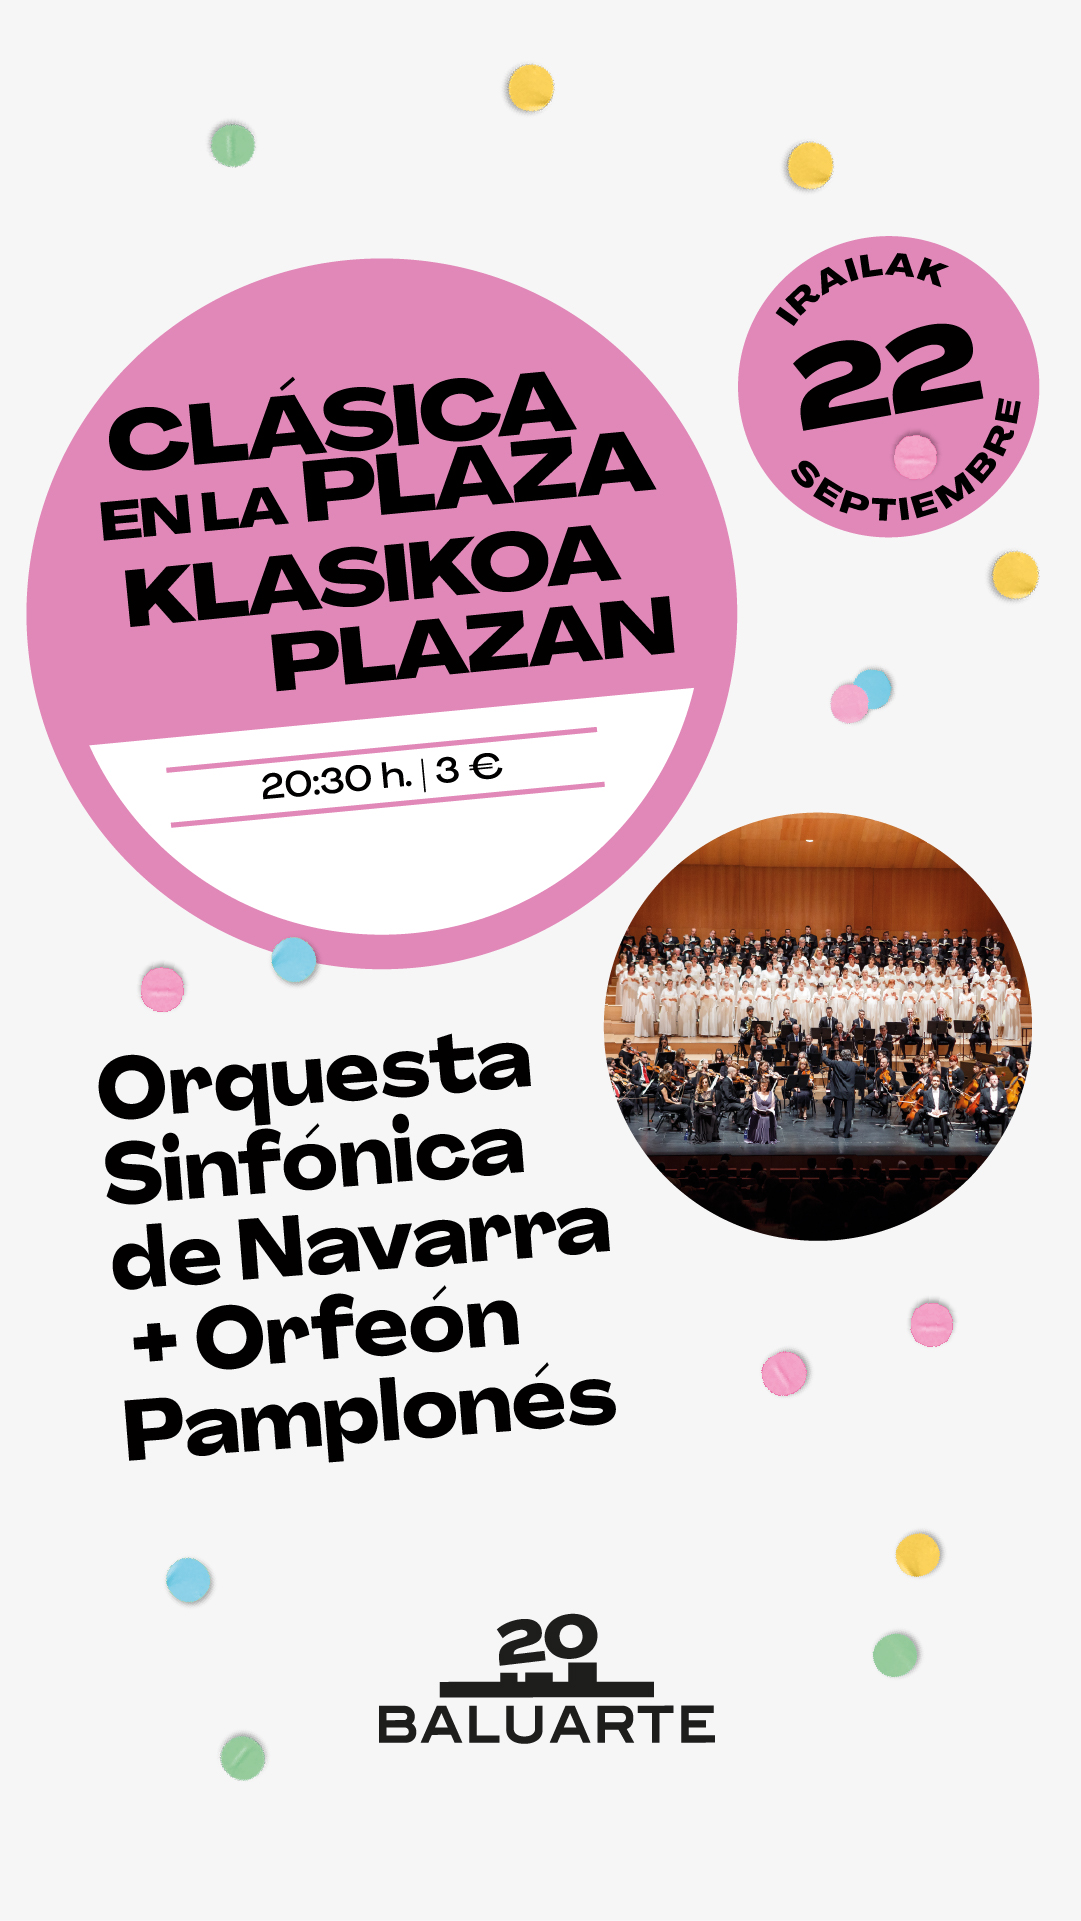 Orquesta Sinfónica de Navarra celebra en concierto el 20º aniversario de Baluarte